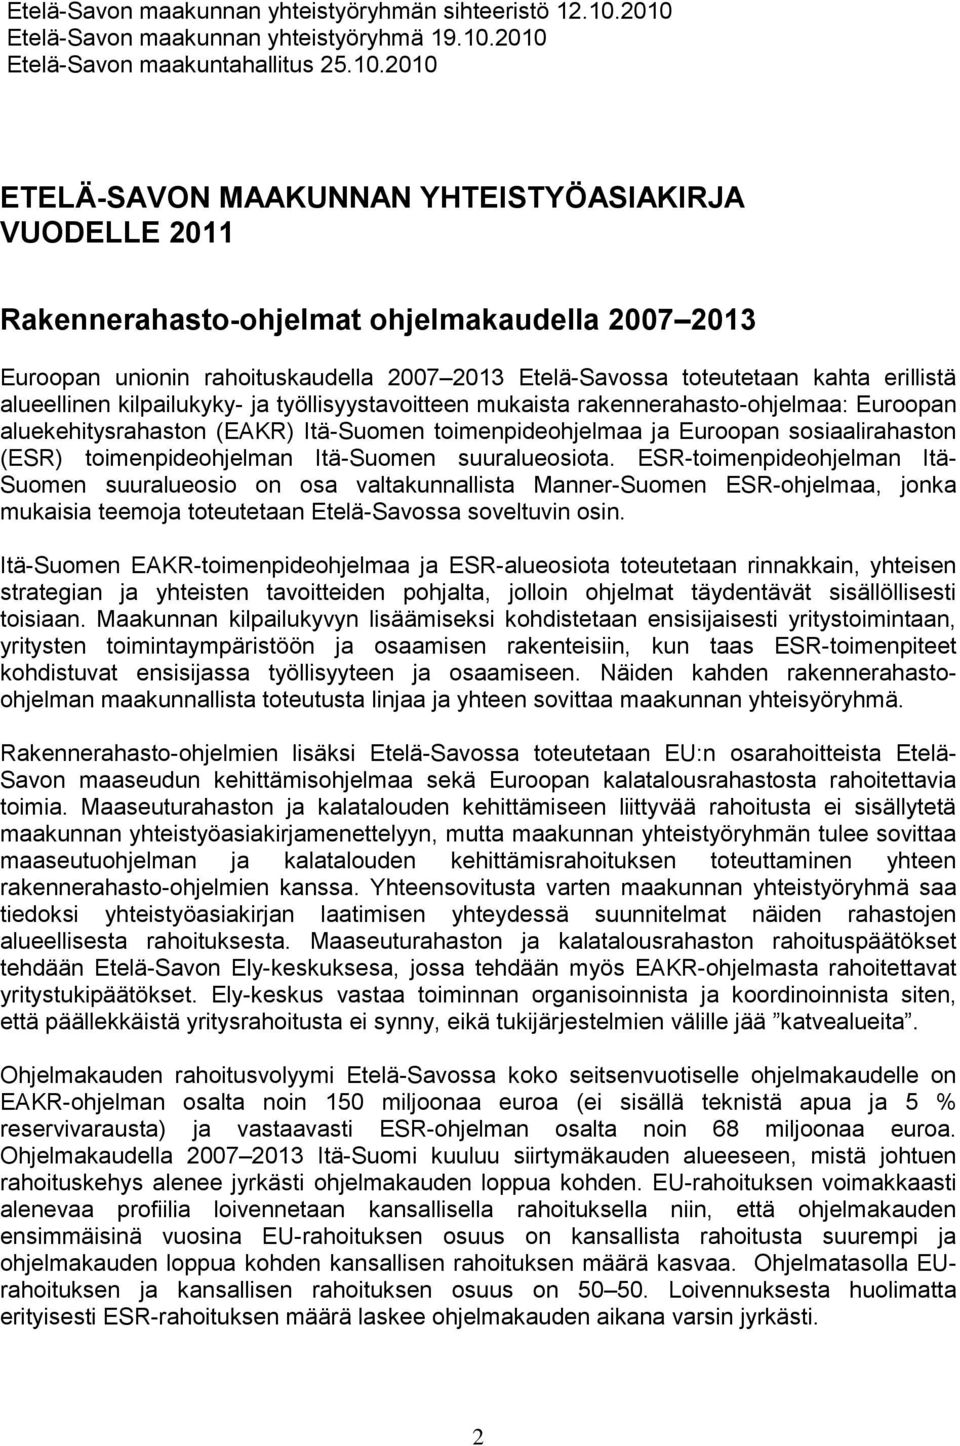 Euroopan unionin rahoituskaudella 2007 2013 Etelä-Savossa toteutetaan kahta erillistä alueellinen kilpailukyky- ja työllisyystavoitteen mukaista rakennerahasto-ohjelmaa: Euroopan aluekehitysrahaston